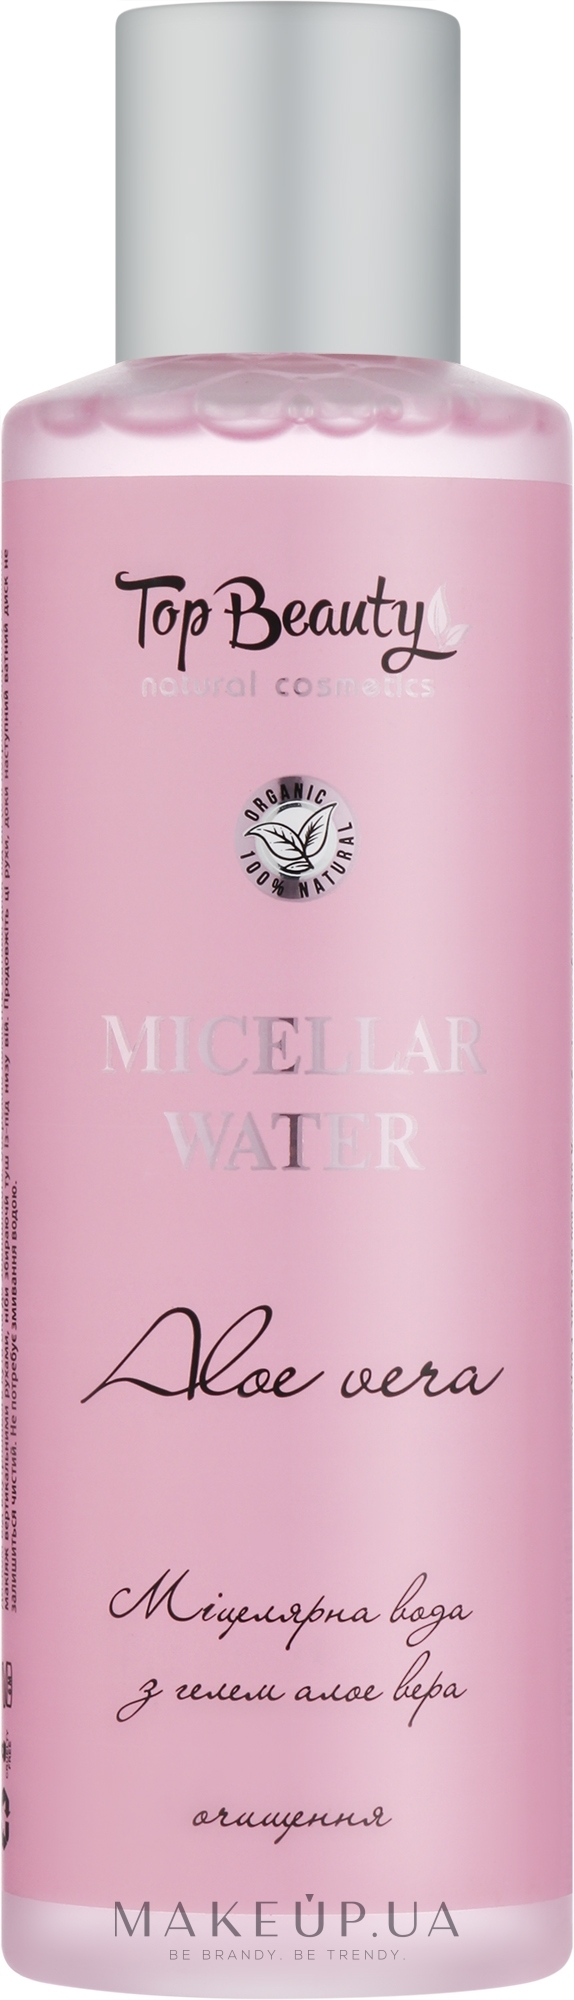 Міцелярна вода з гелем Алое Вера - Top Beauty Micellar Water — фото 200ml